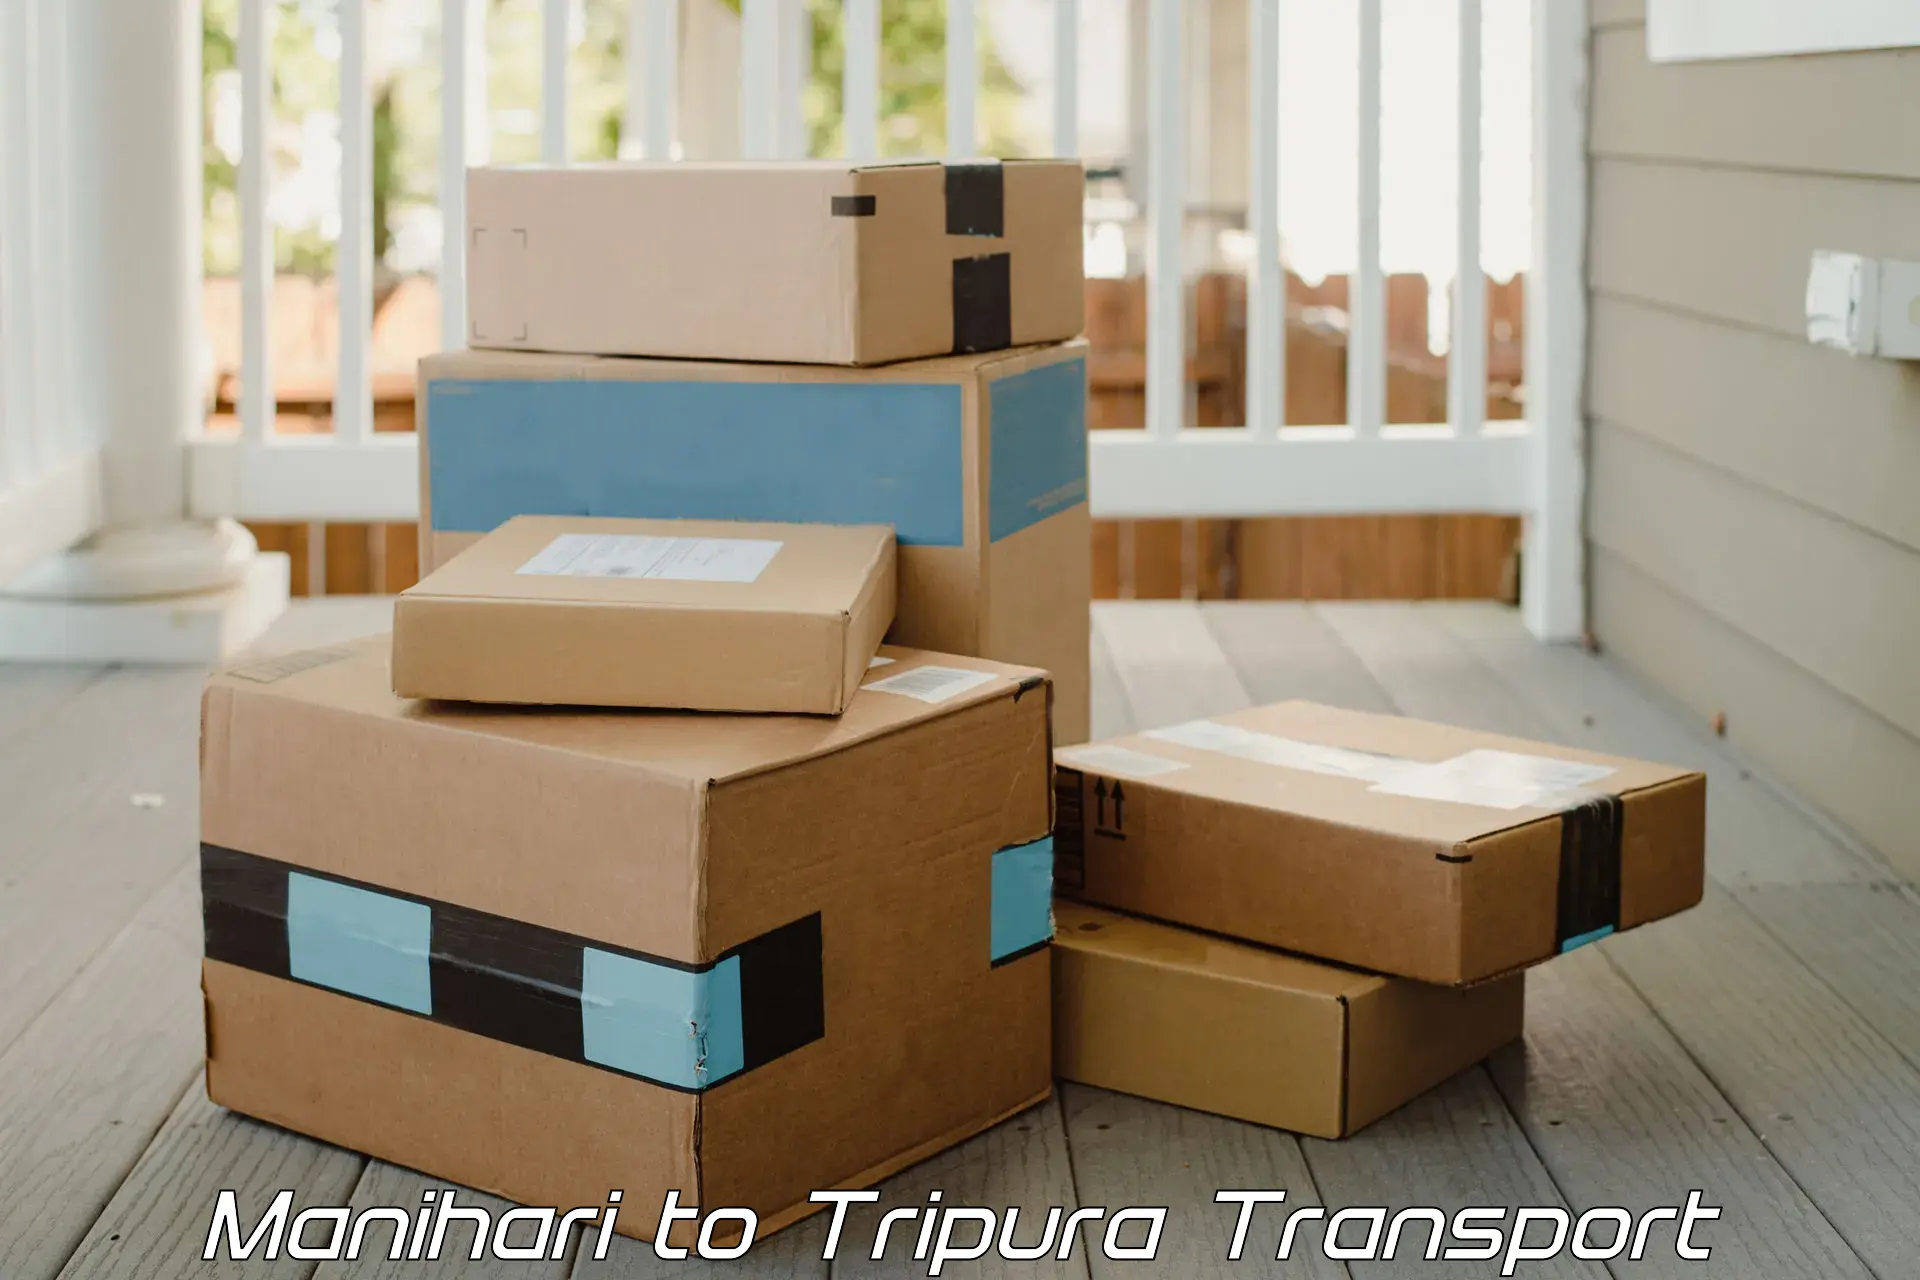 Air cargo transport services Manihari to Tripura